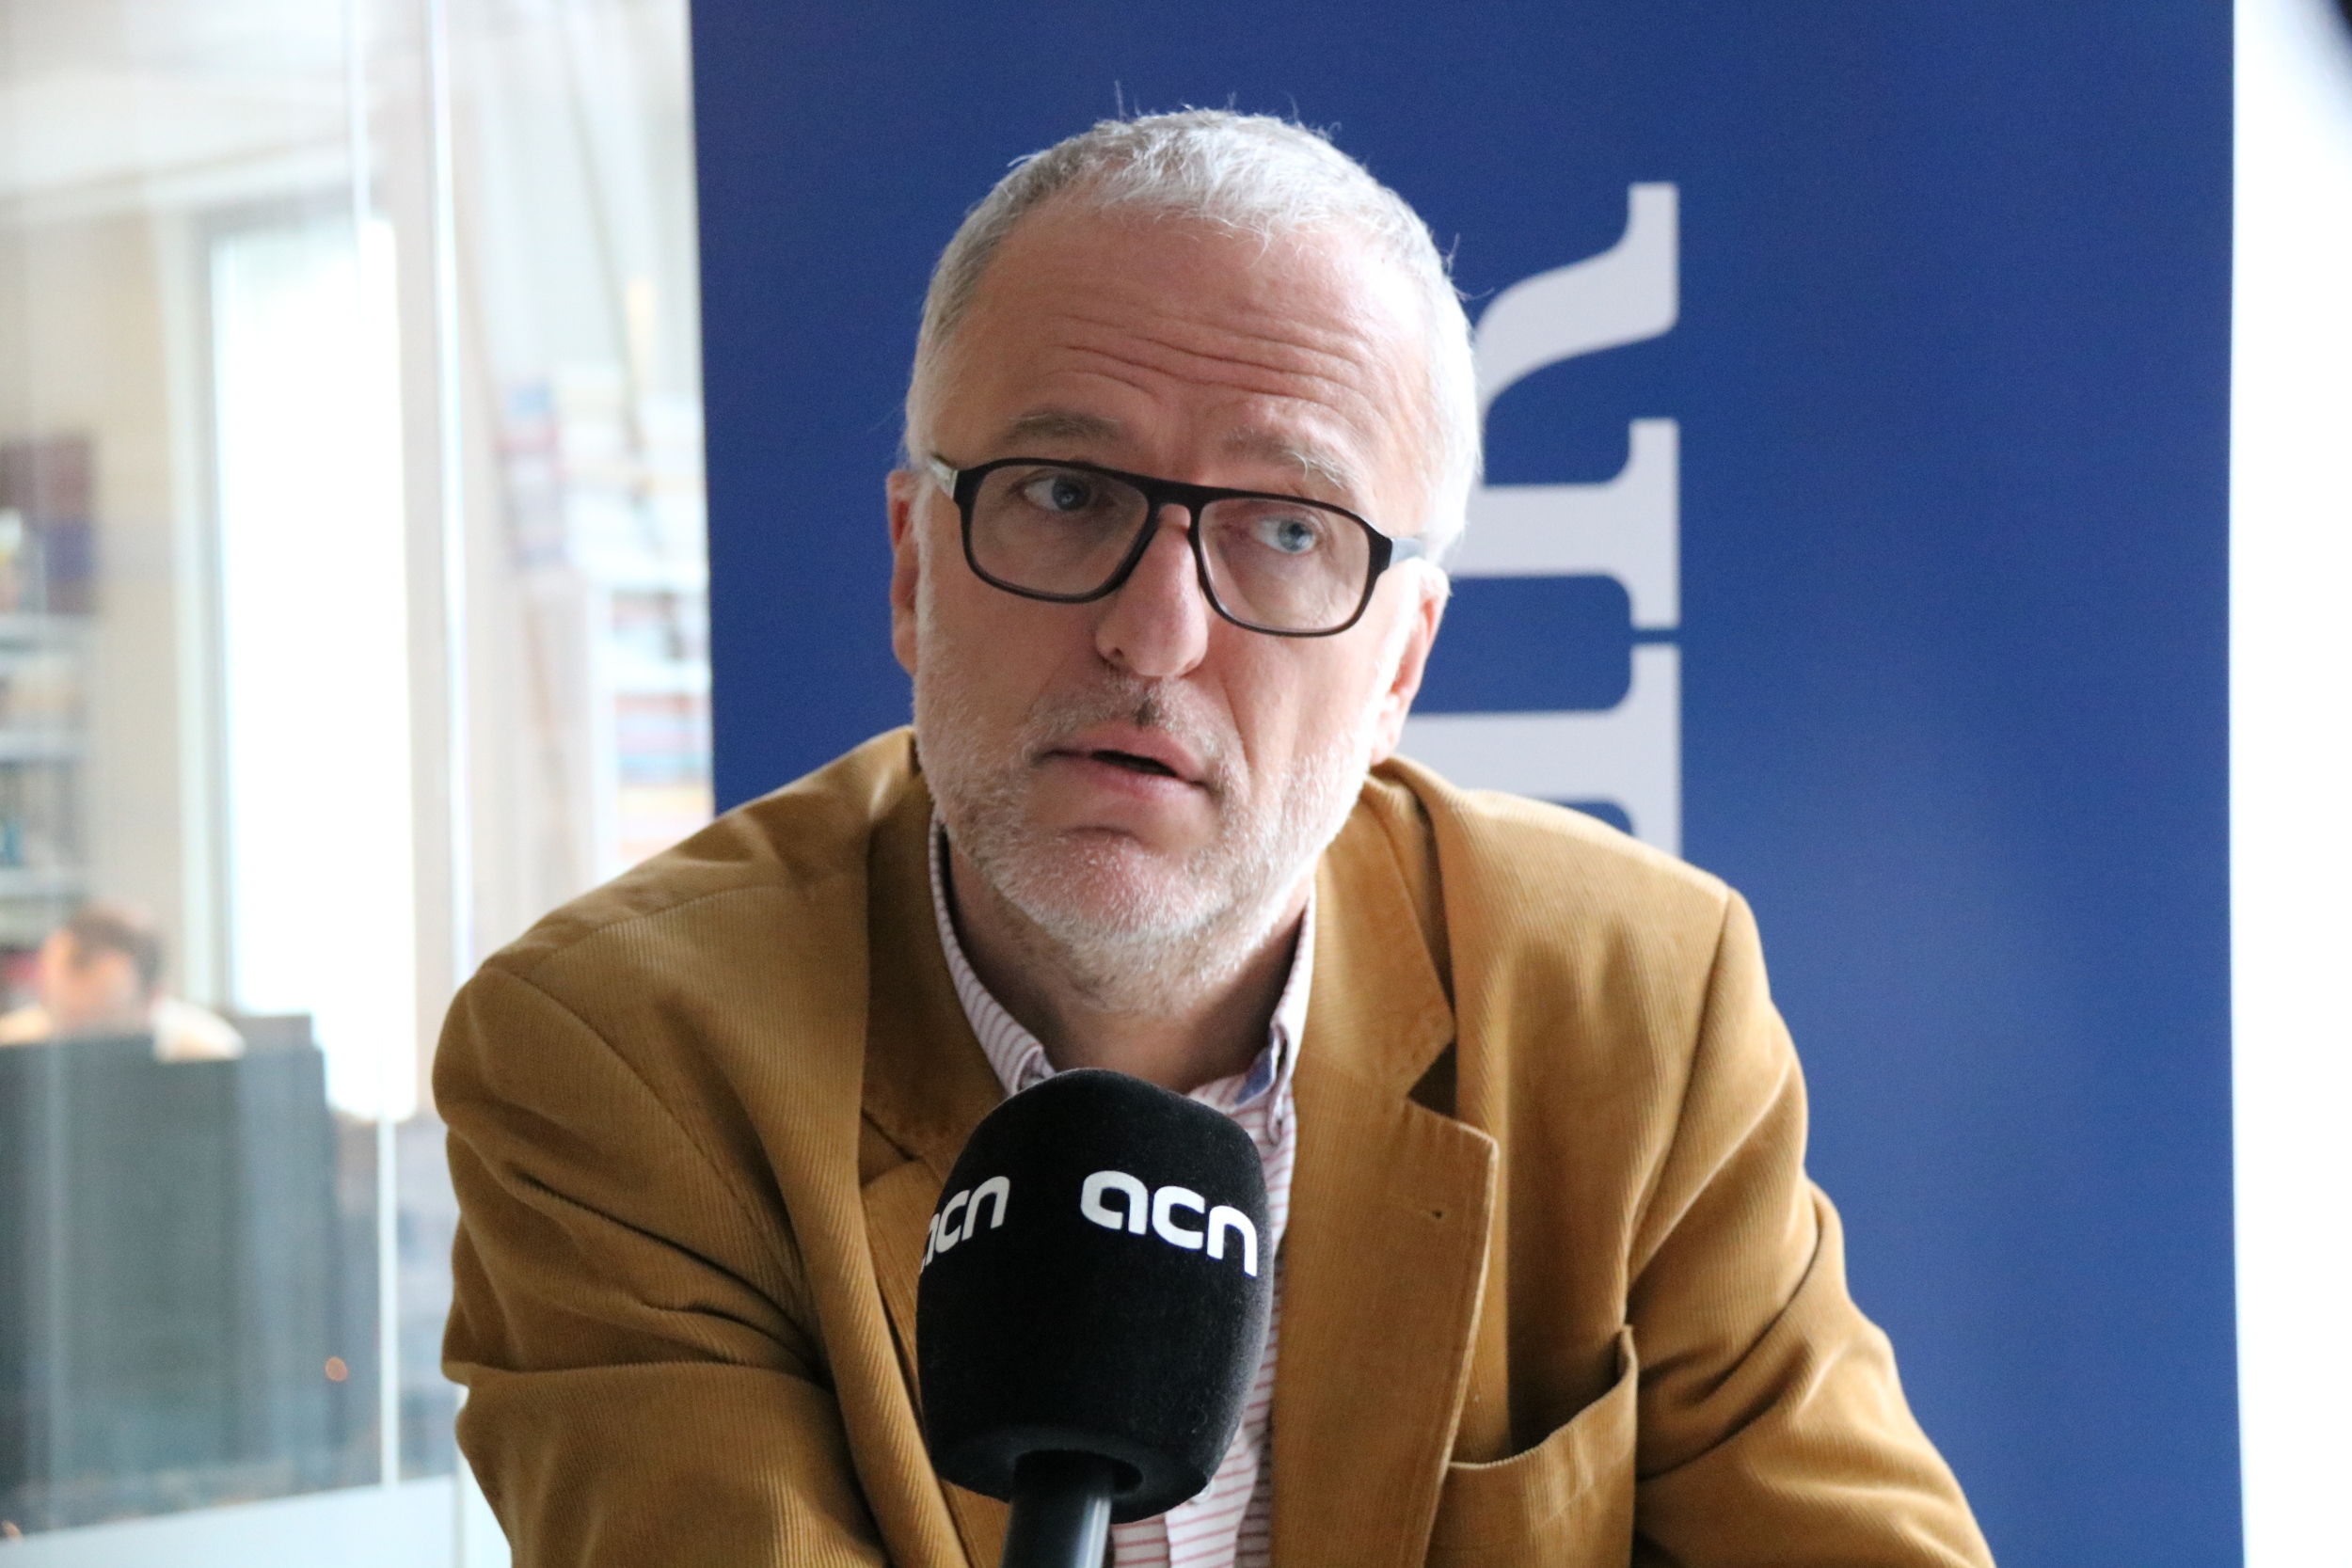 Jurek Kuczkiewicz, senior writer at Belgian daily 'Le Soir' (by ACN)